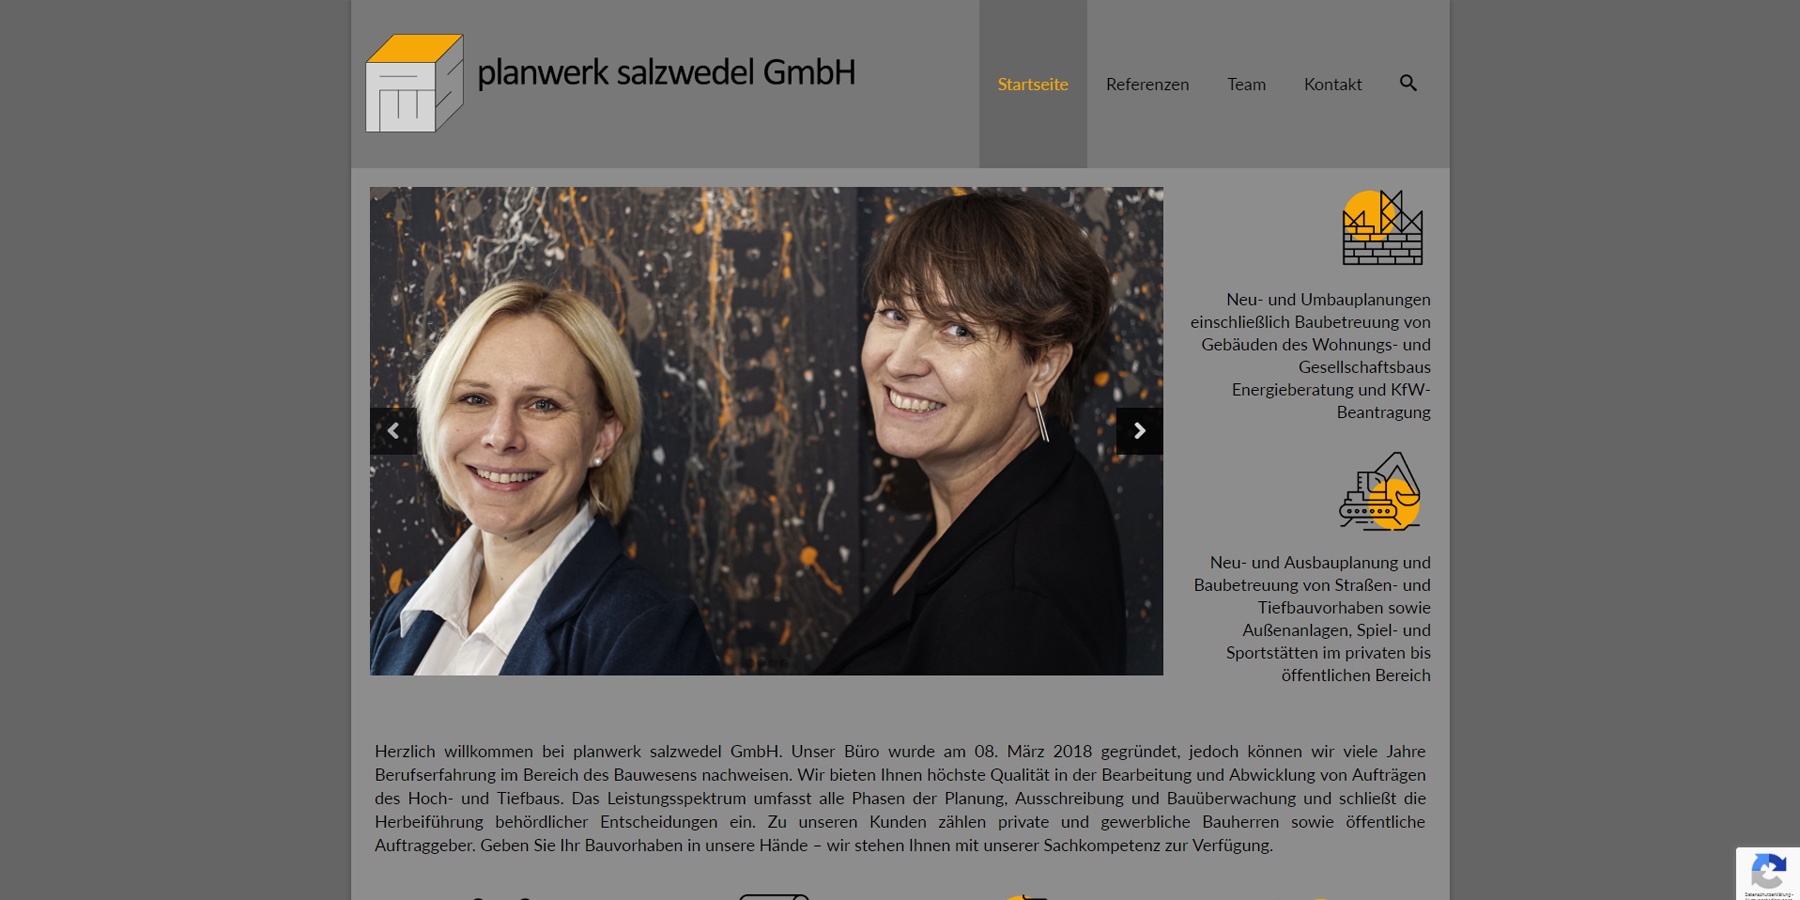 planwerk salzwedel GmbH - Startseite